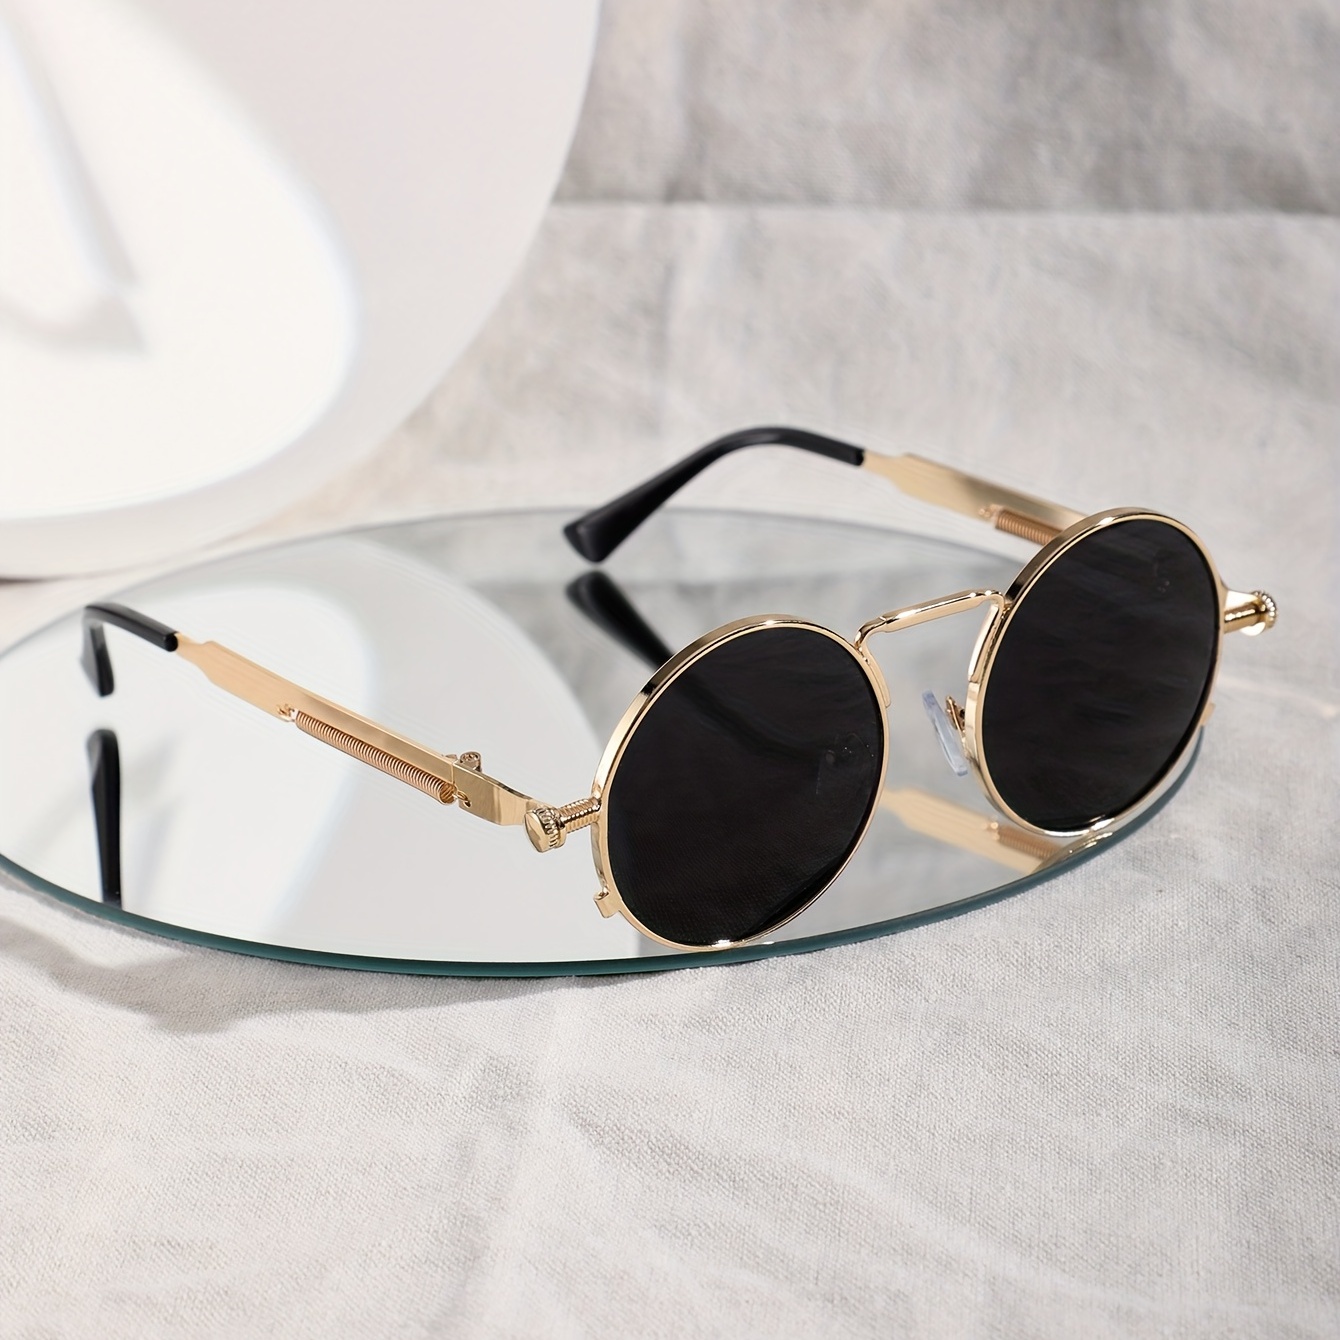 Las mejores ofertas en Steampunk Gafas de sol de espejo marco para hombres